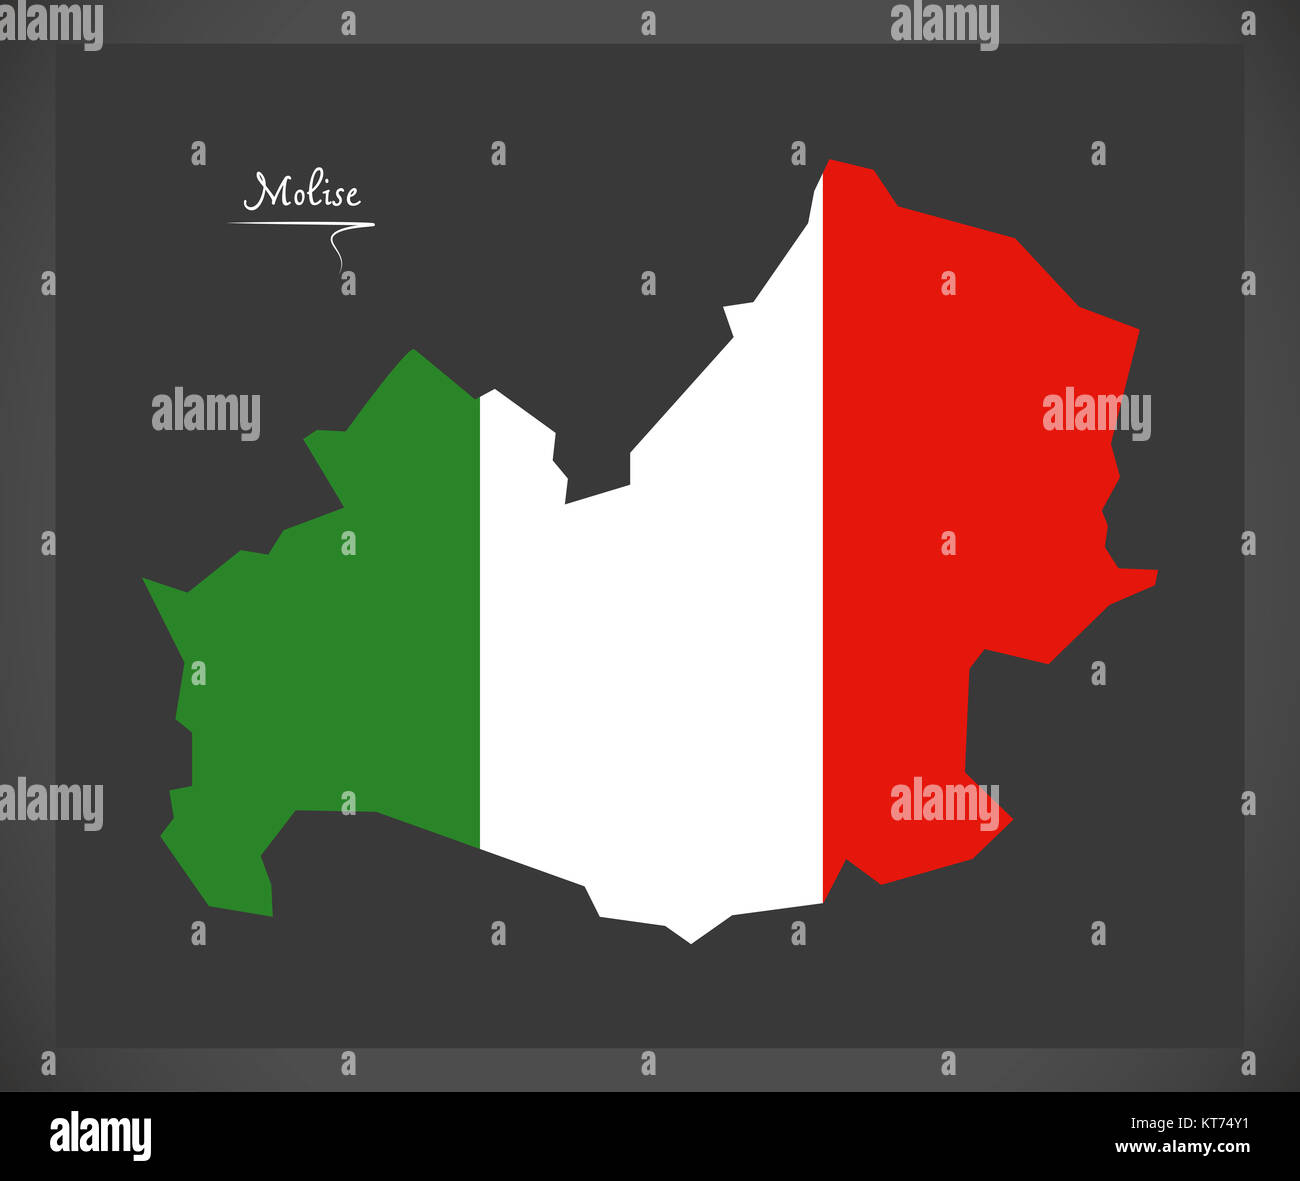 Molise mappa italiana con bandiera nazionale illustrazione Foto Stock